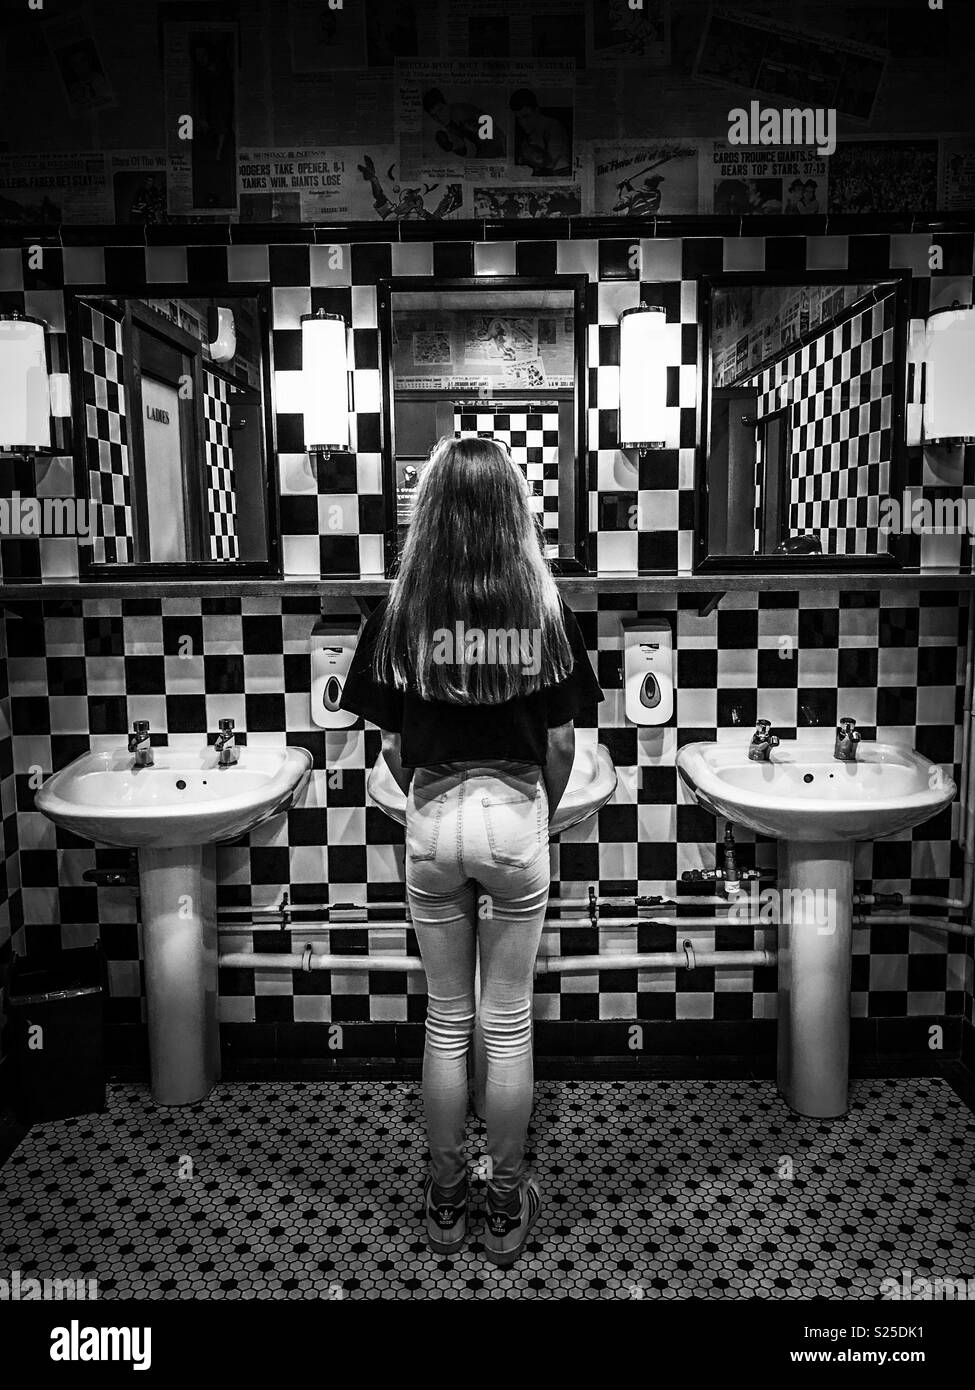 Fille regardant dans le miroir Banque d'images noir et blanc - Alamy